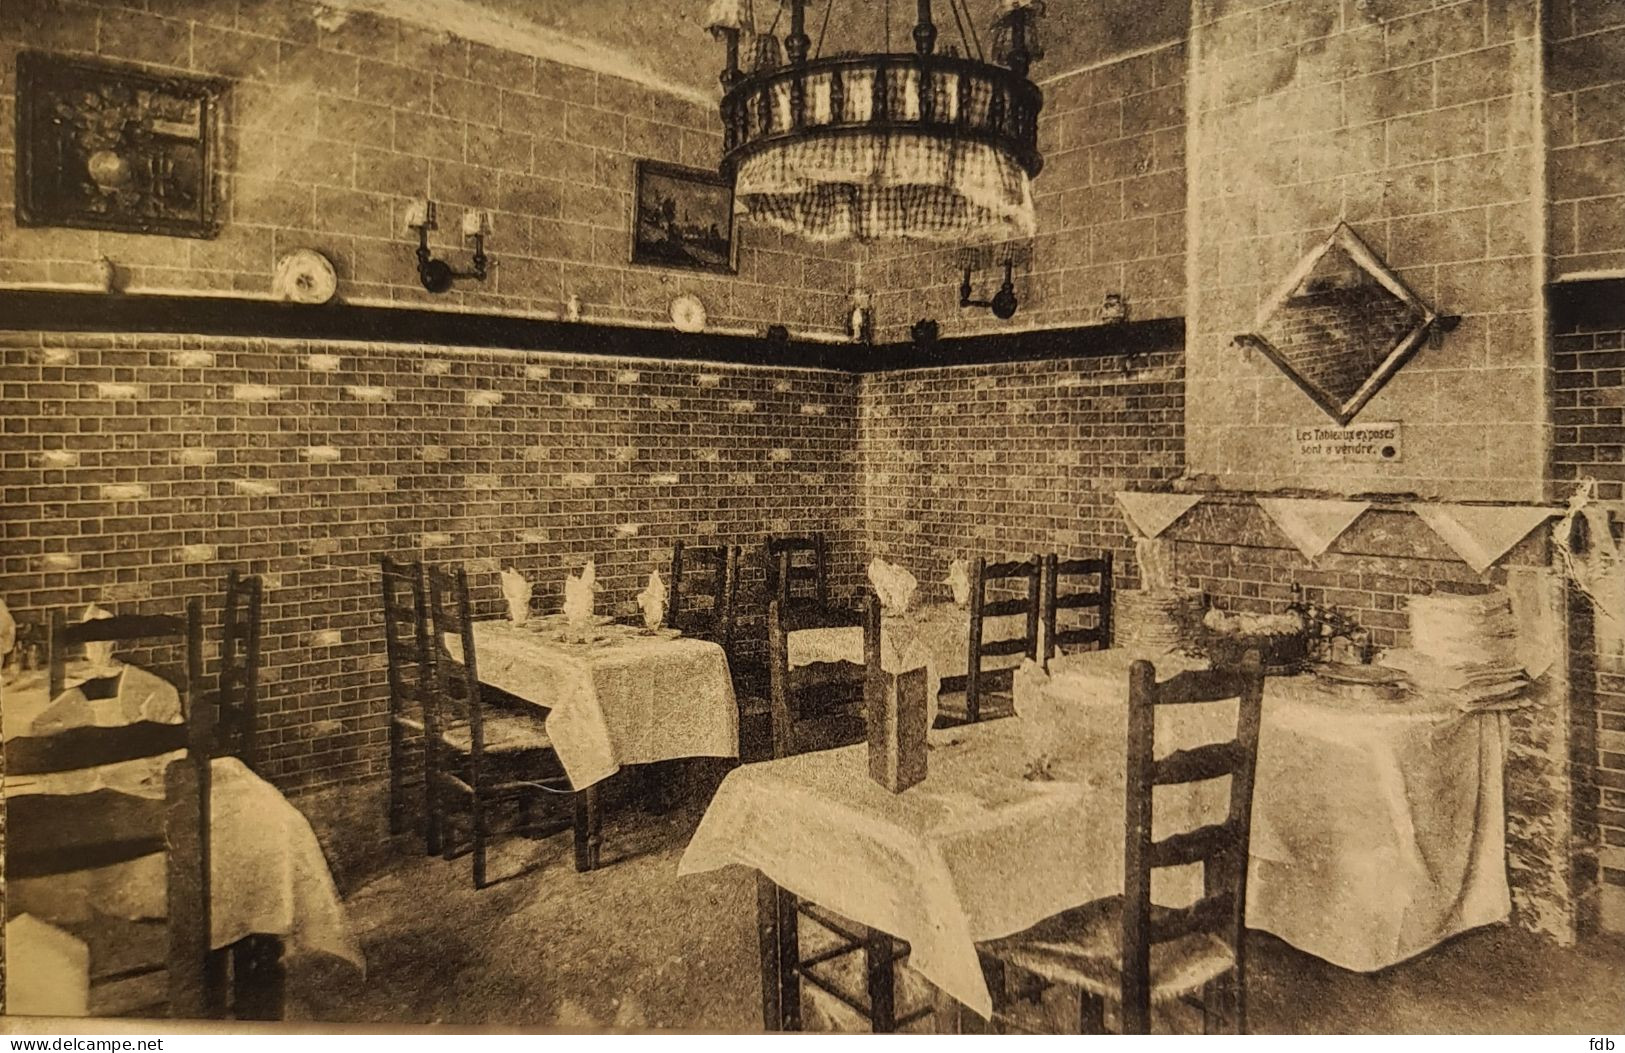 Tailfer sur Meuse - Lustin - livret de 5 cartes - The Chatham - Hôtel et restaurant